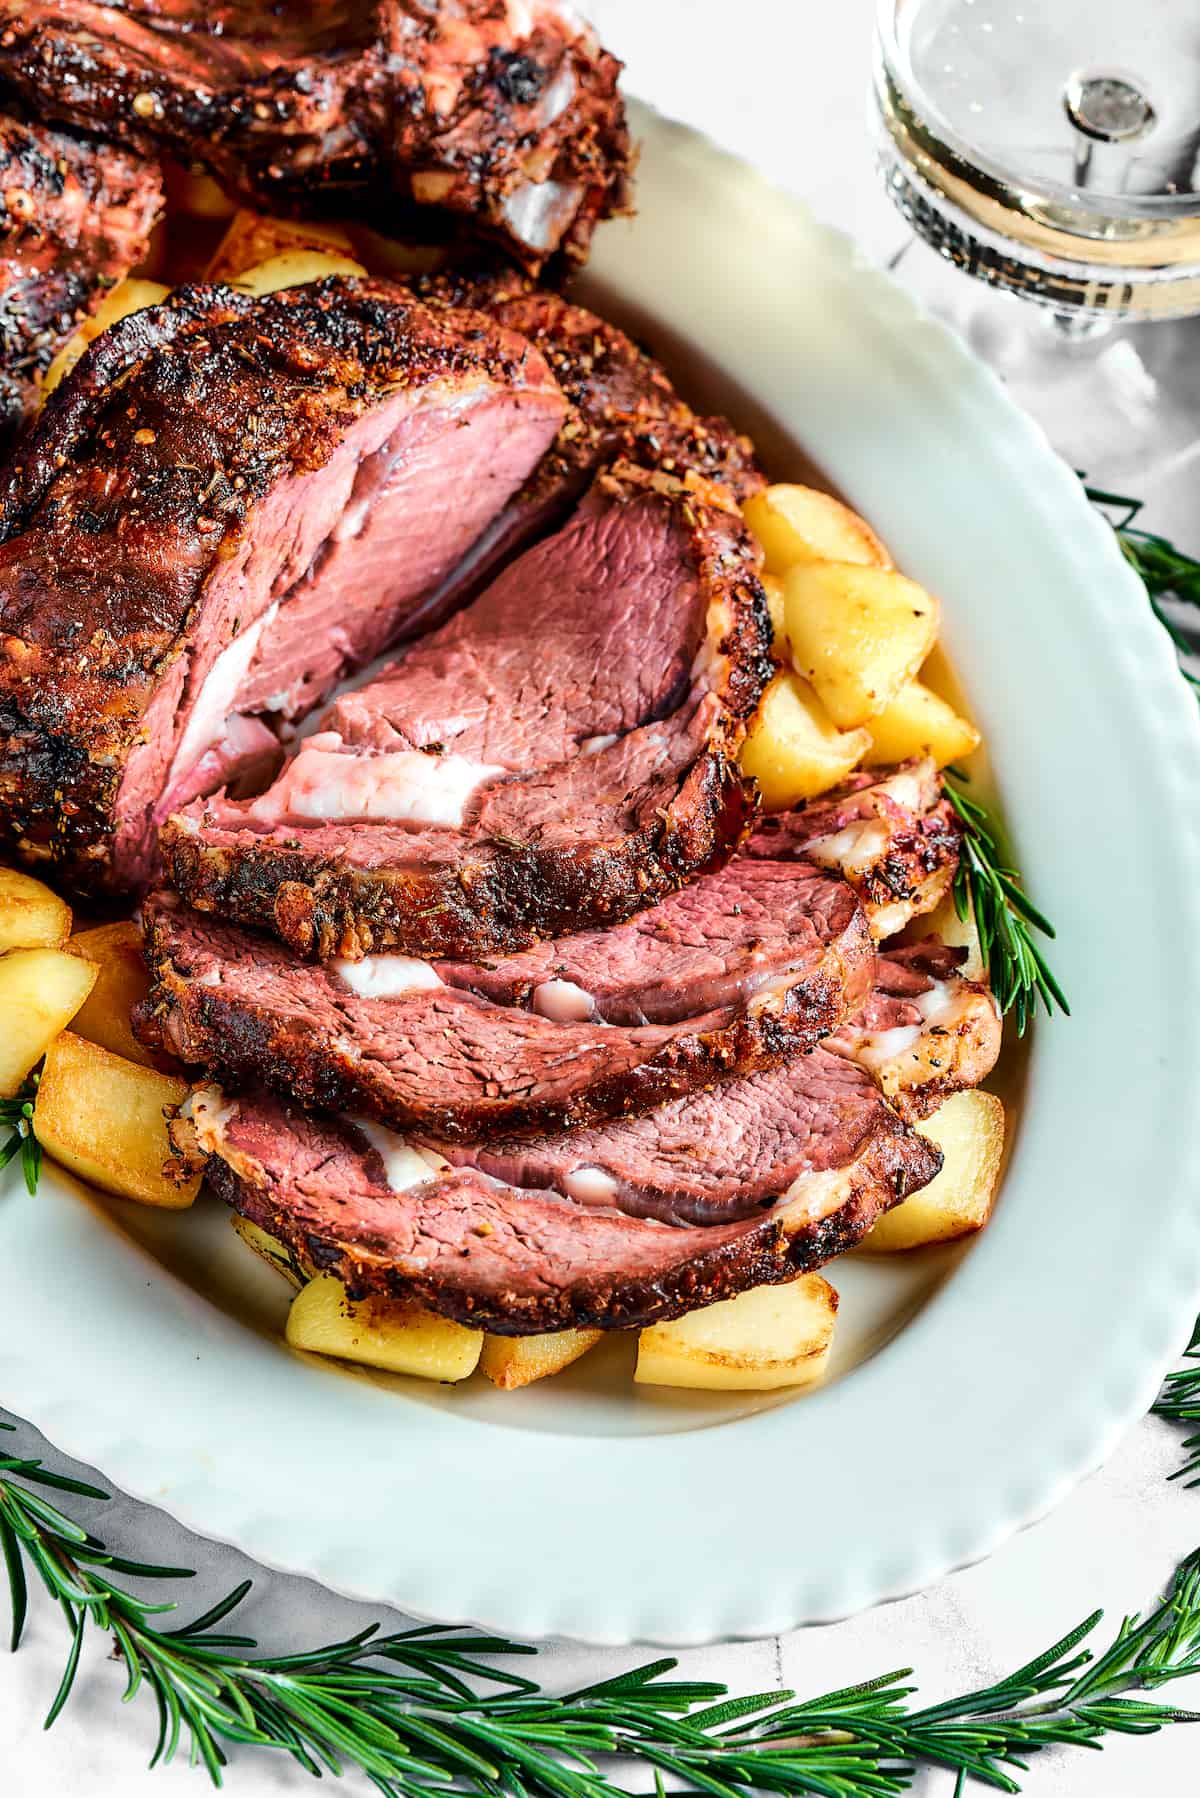 A sliced prime rib roast on a platter.